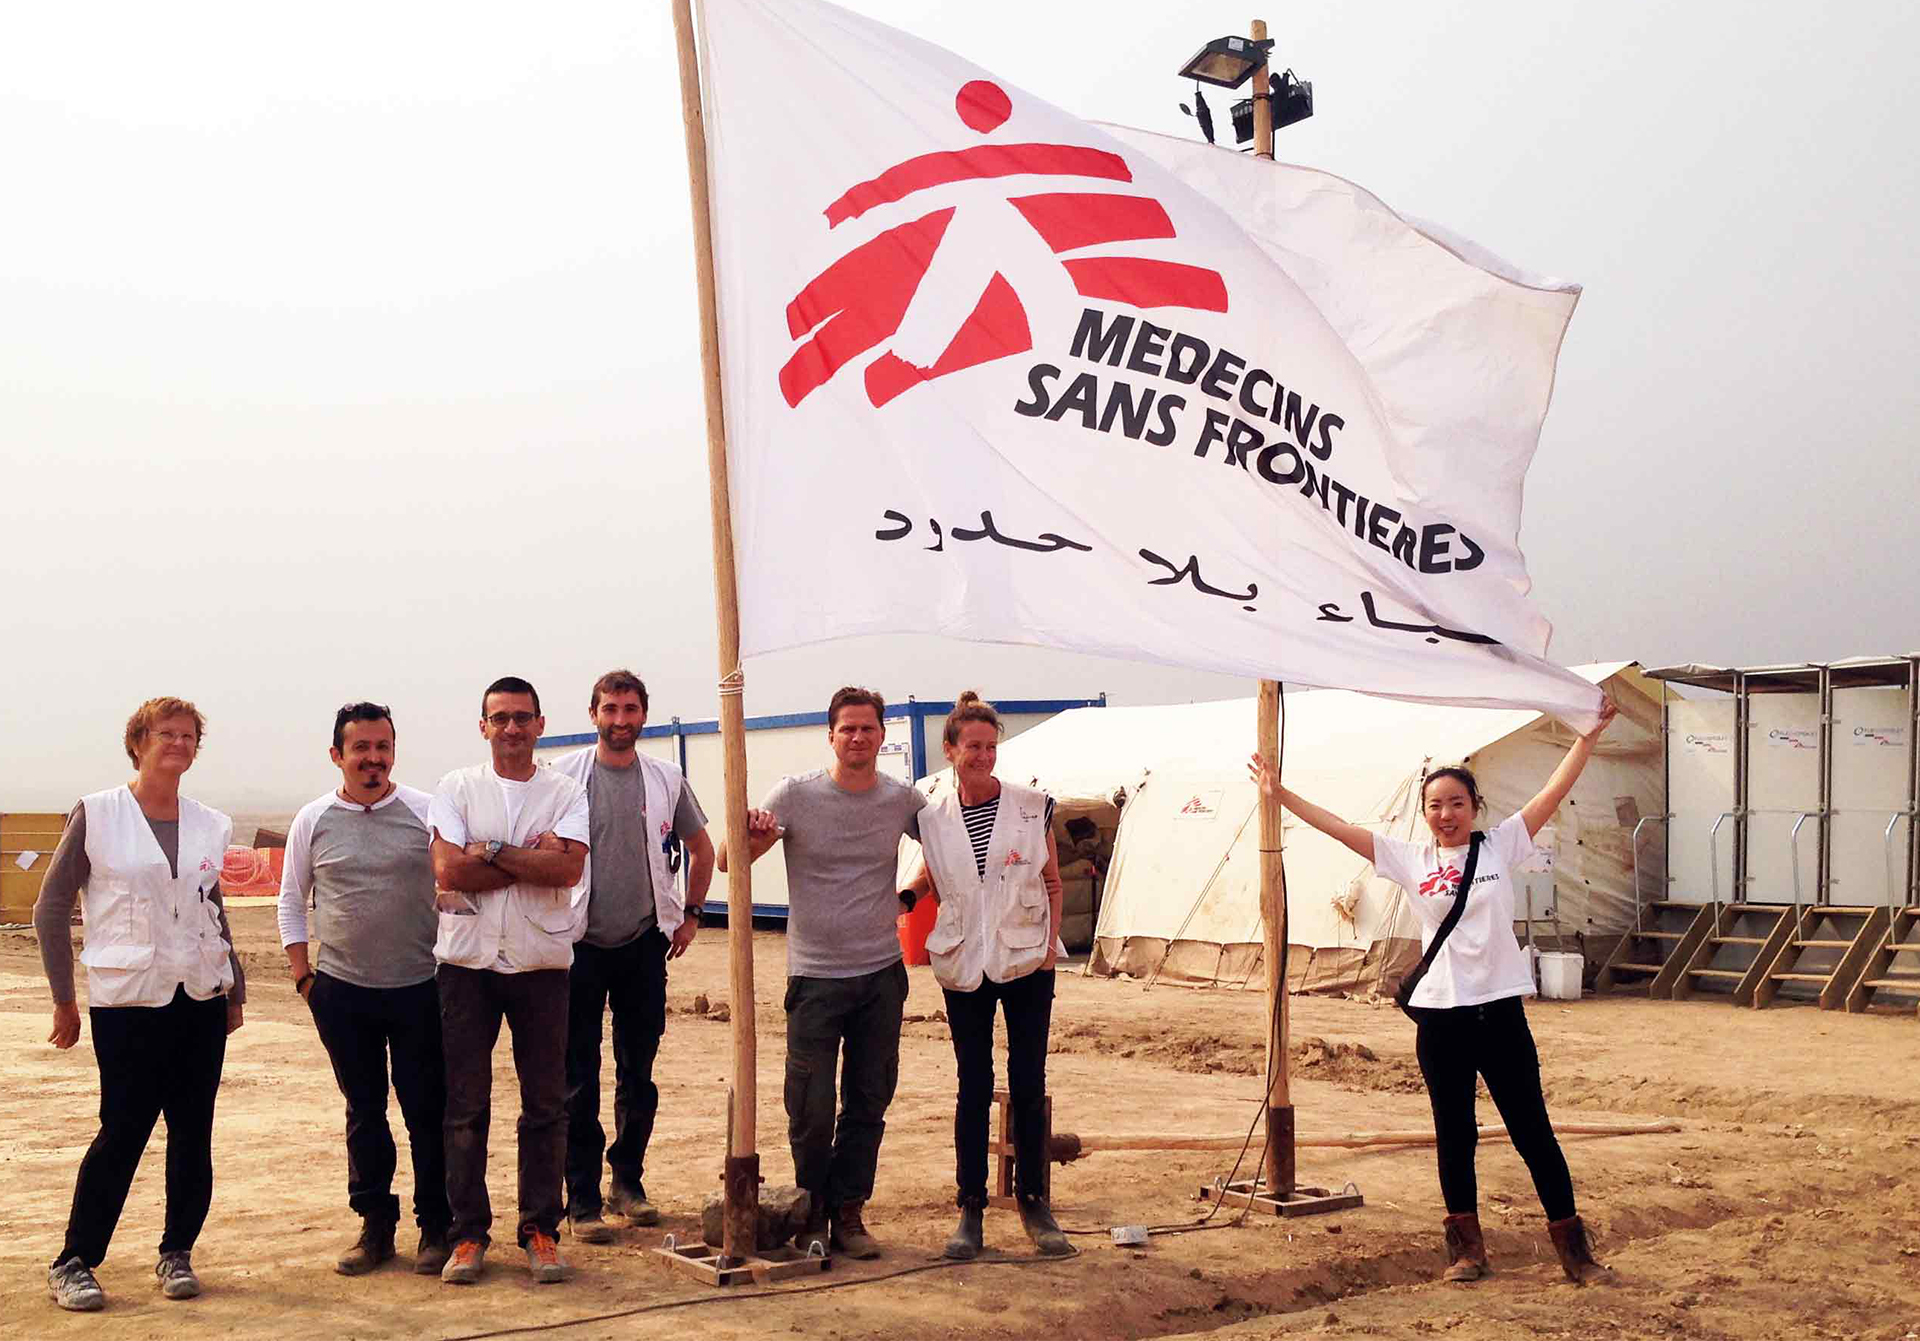 突然戦闘がぼっ発したイラクで緊急の外科プロジェクトを立ち上げた。たくさんの職種のスタッフが世界中から集まり何もない場所にテント病院を立てた　© MSF